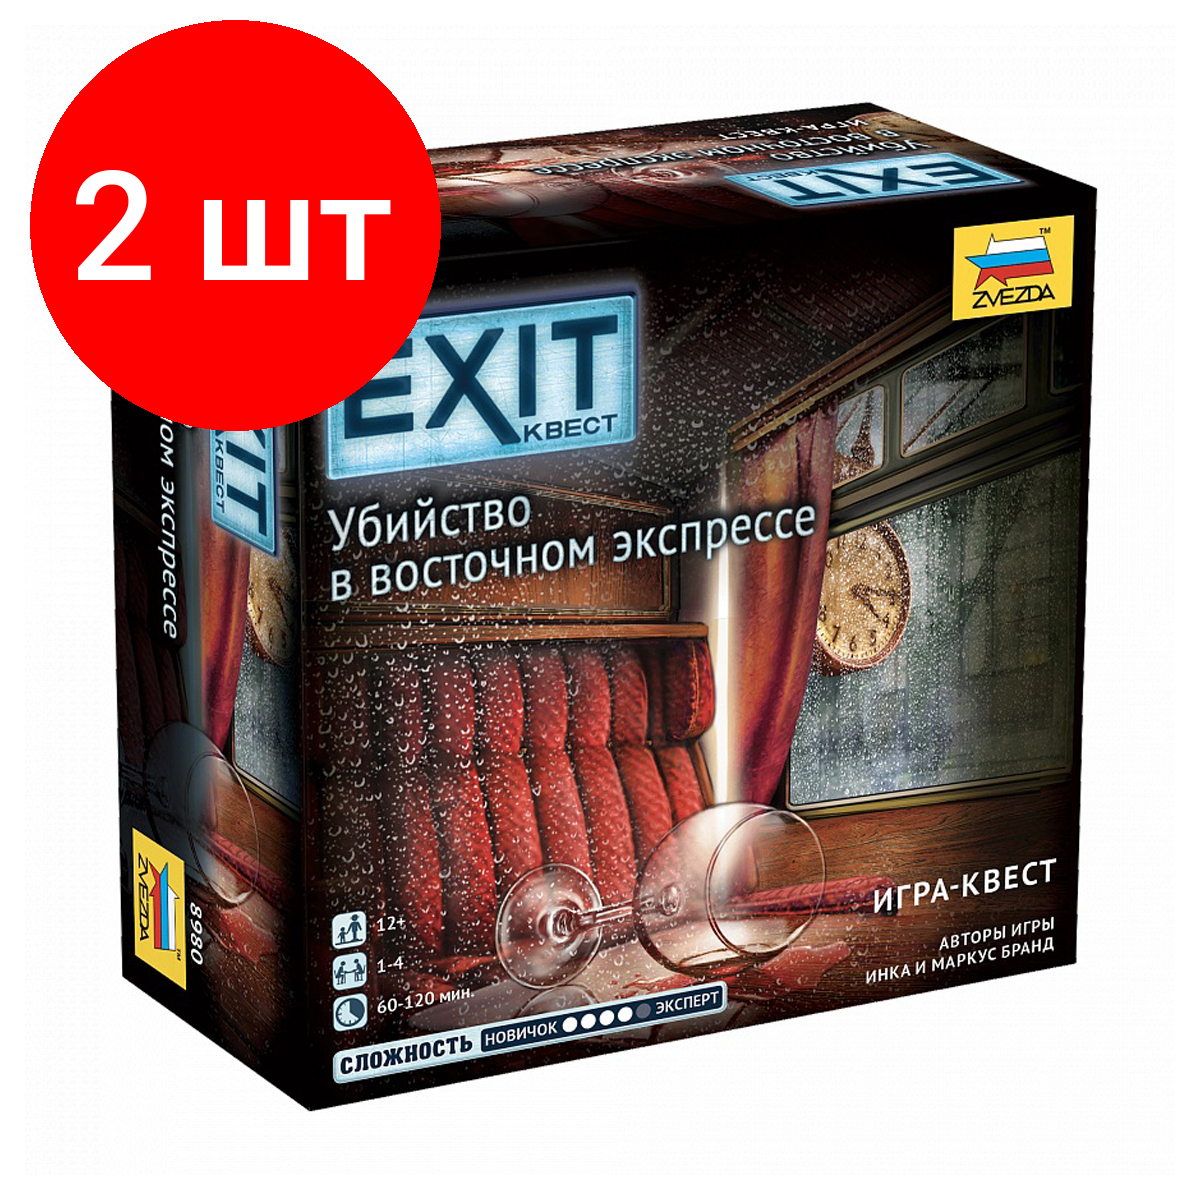 Комплект 2 шт, Игра настольная ZVEZDA "Exit Квест. Убийство в восточном экпрессе", картонная коробка